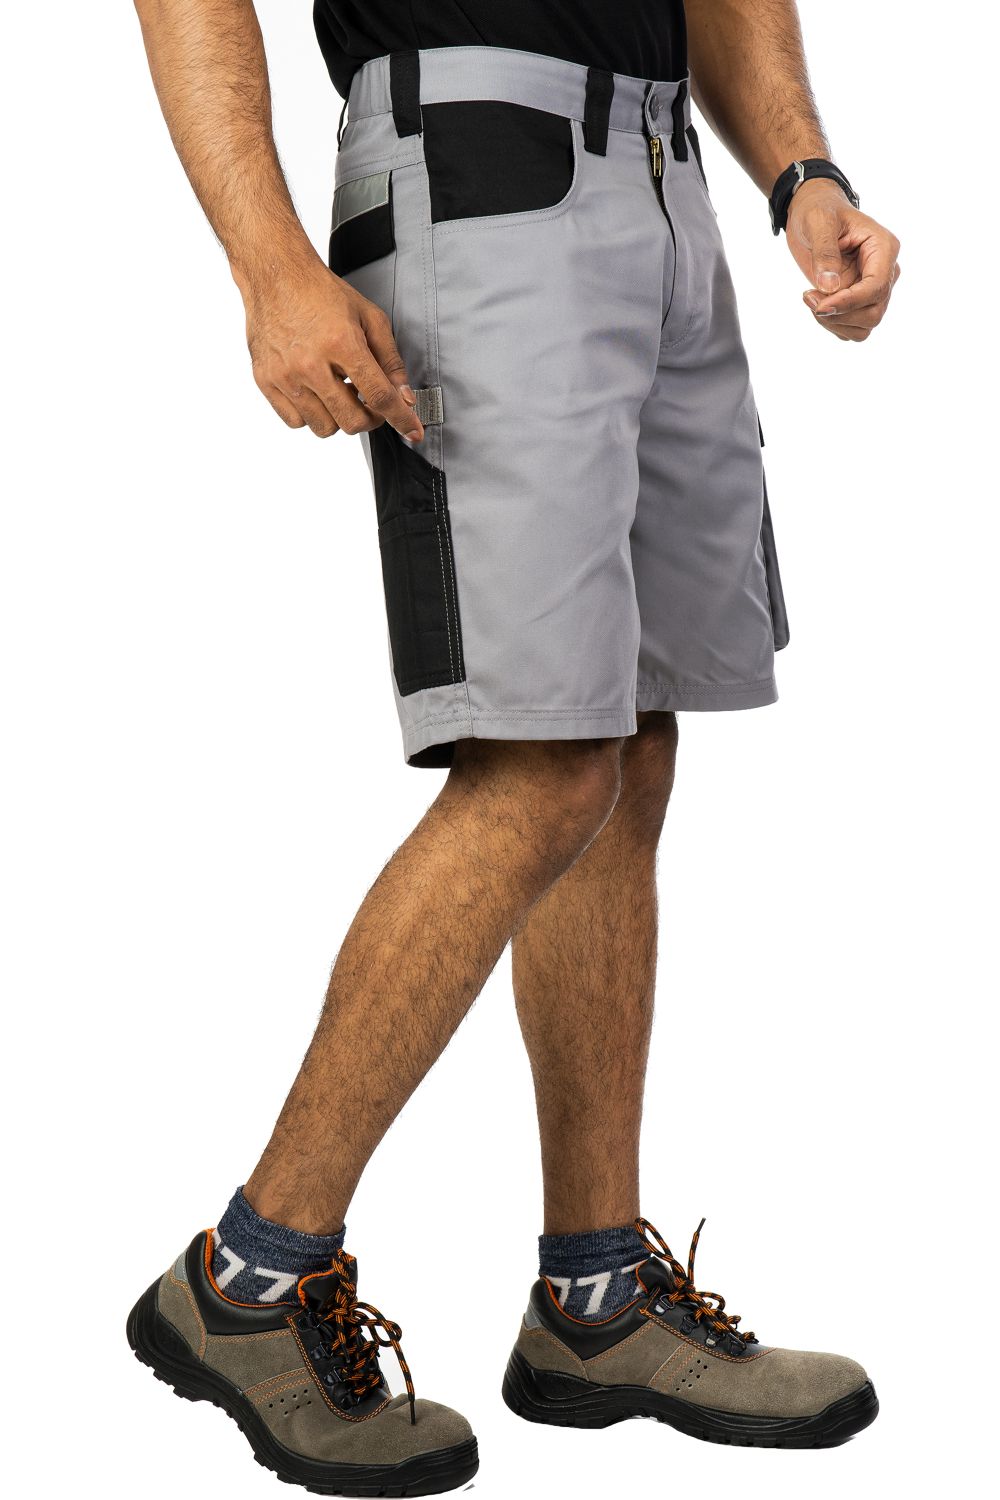 industrial design ergonomic carbon-black shorts